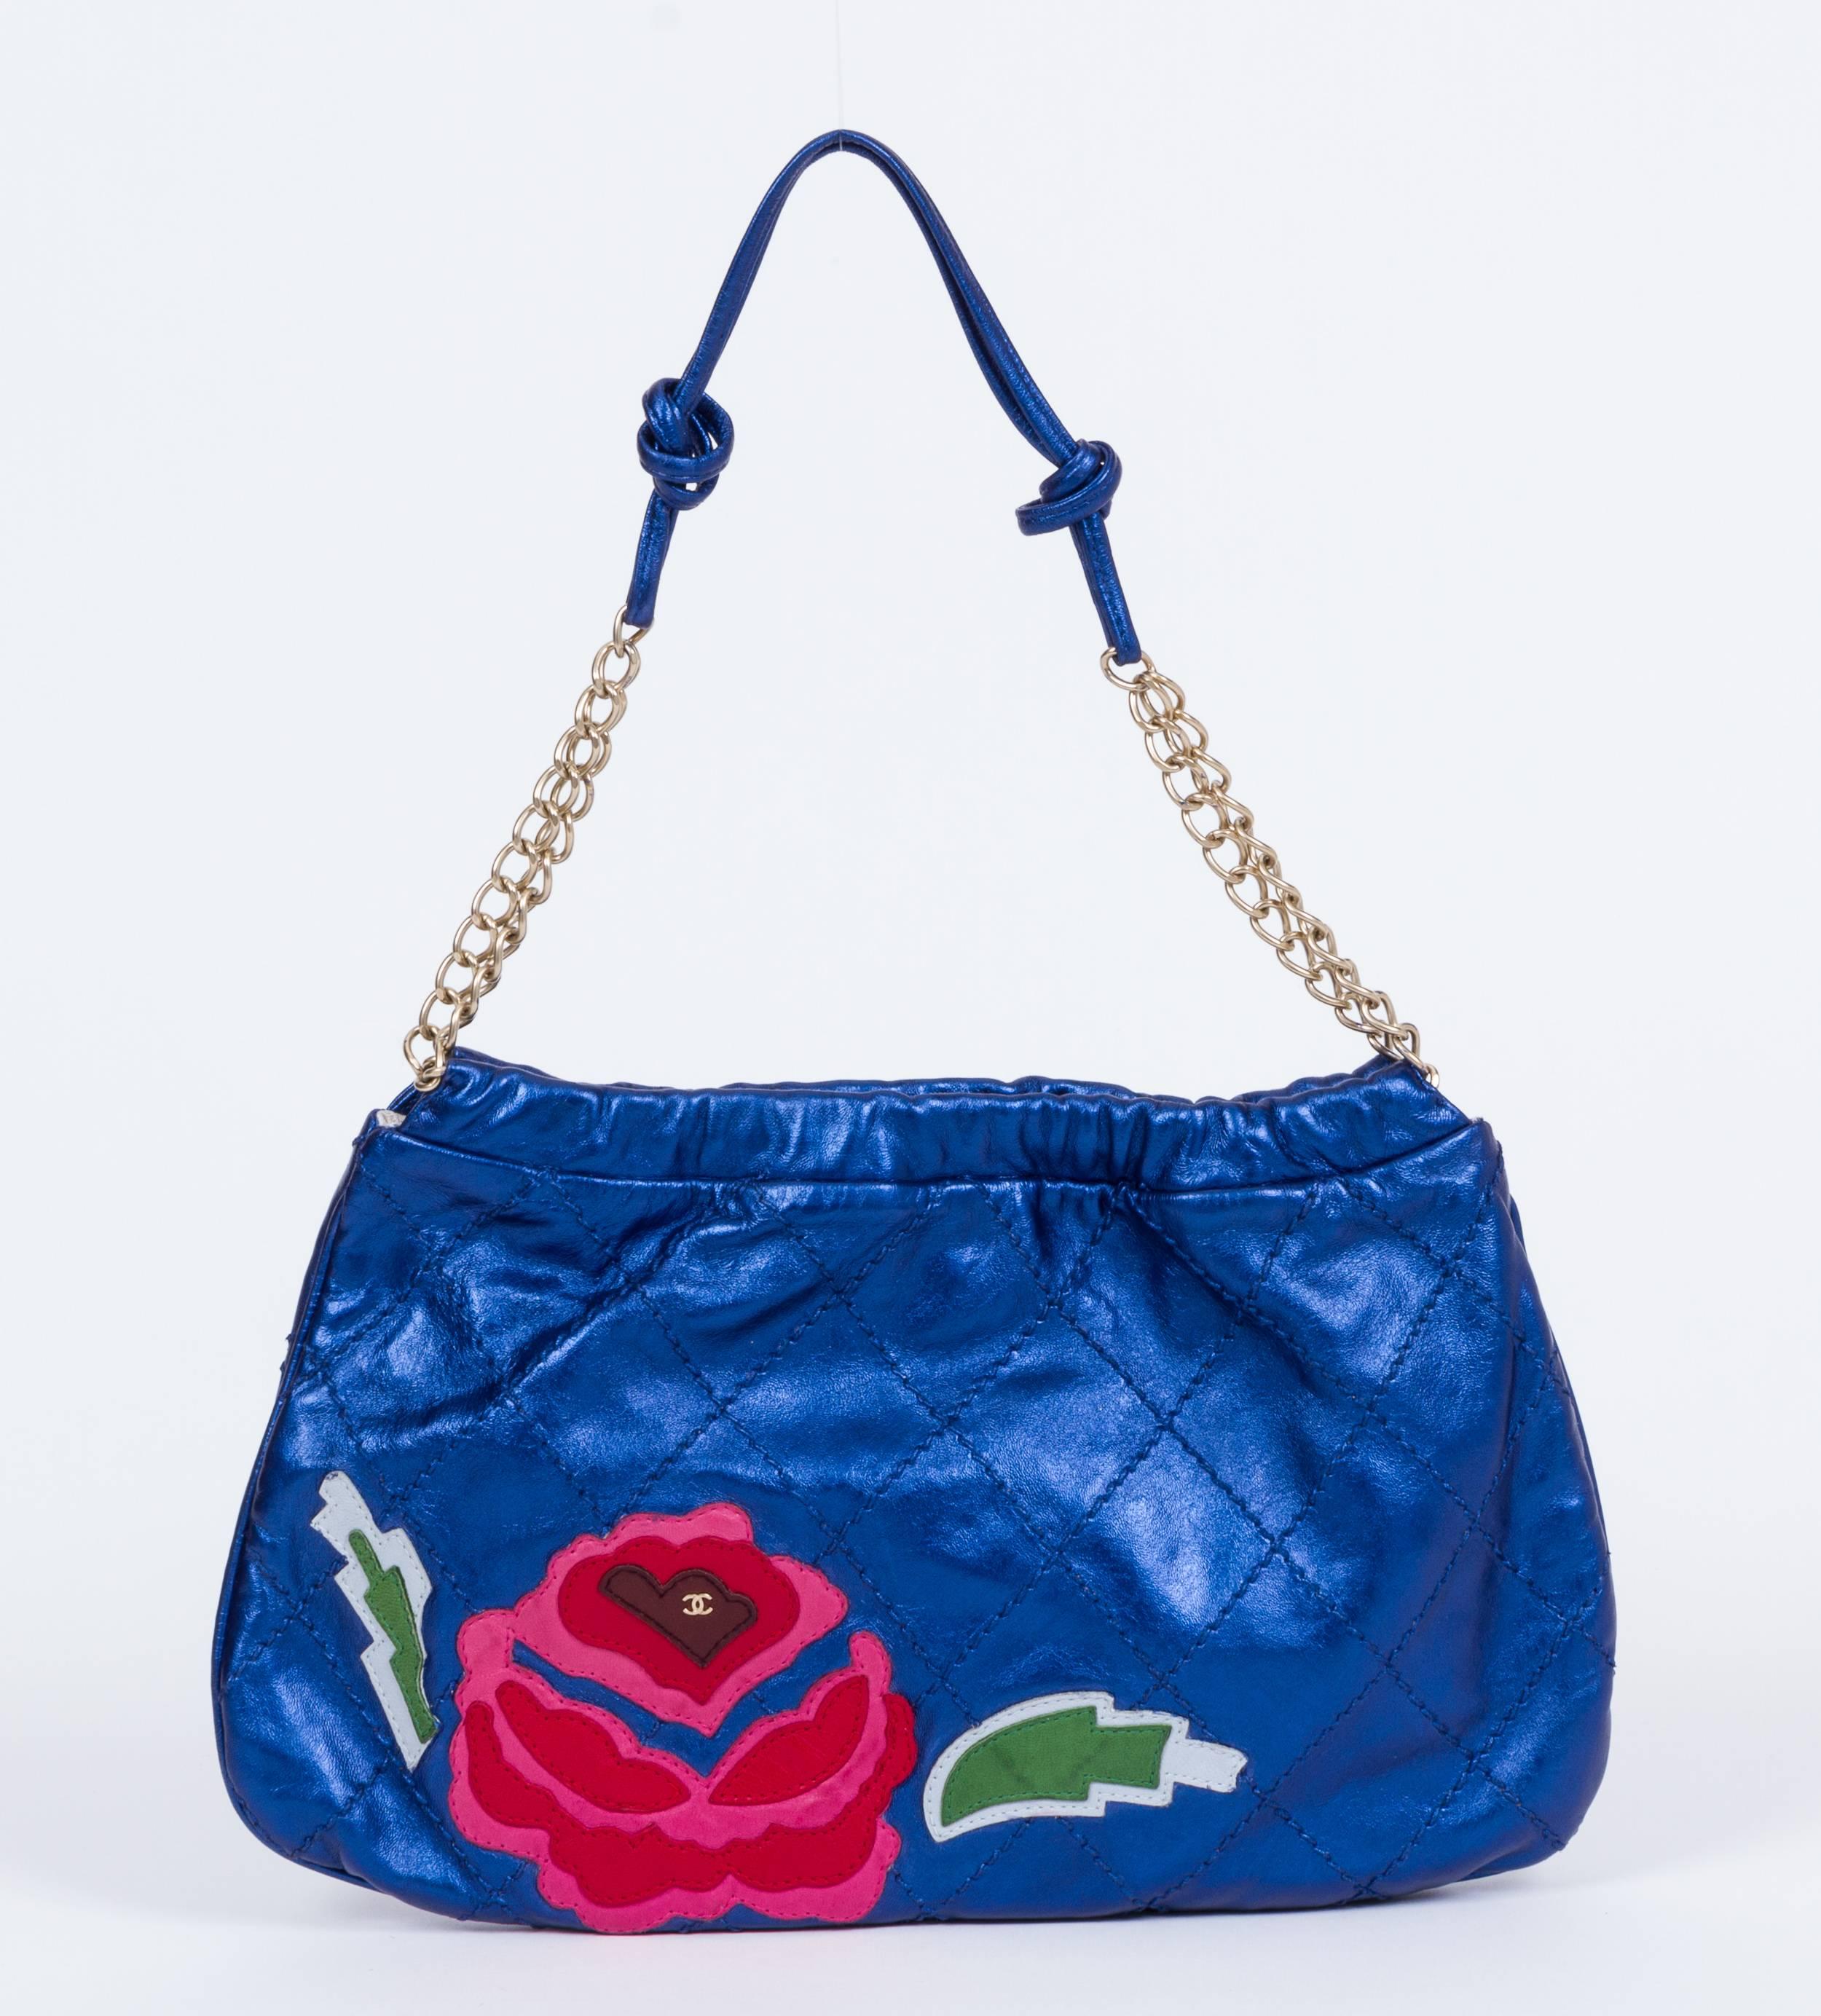 Chanel metallic blue shoulder bag with front rose decoration. Collection 2003/2004. Shoulder drop 9